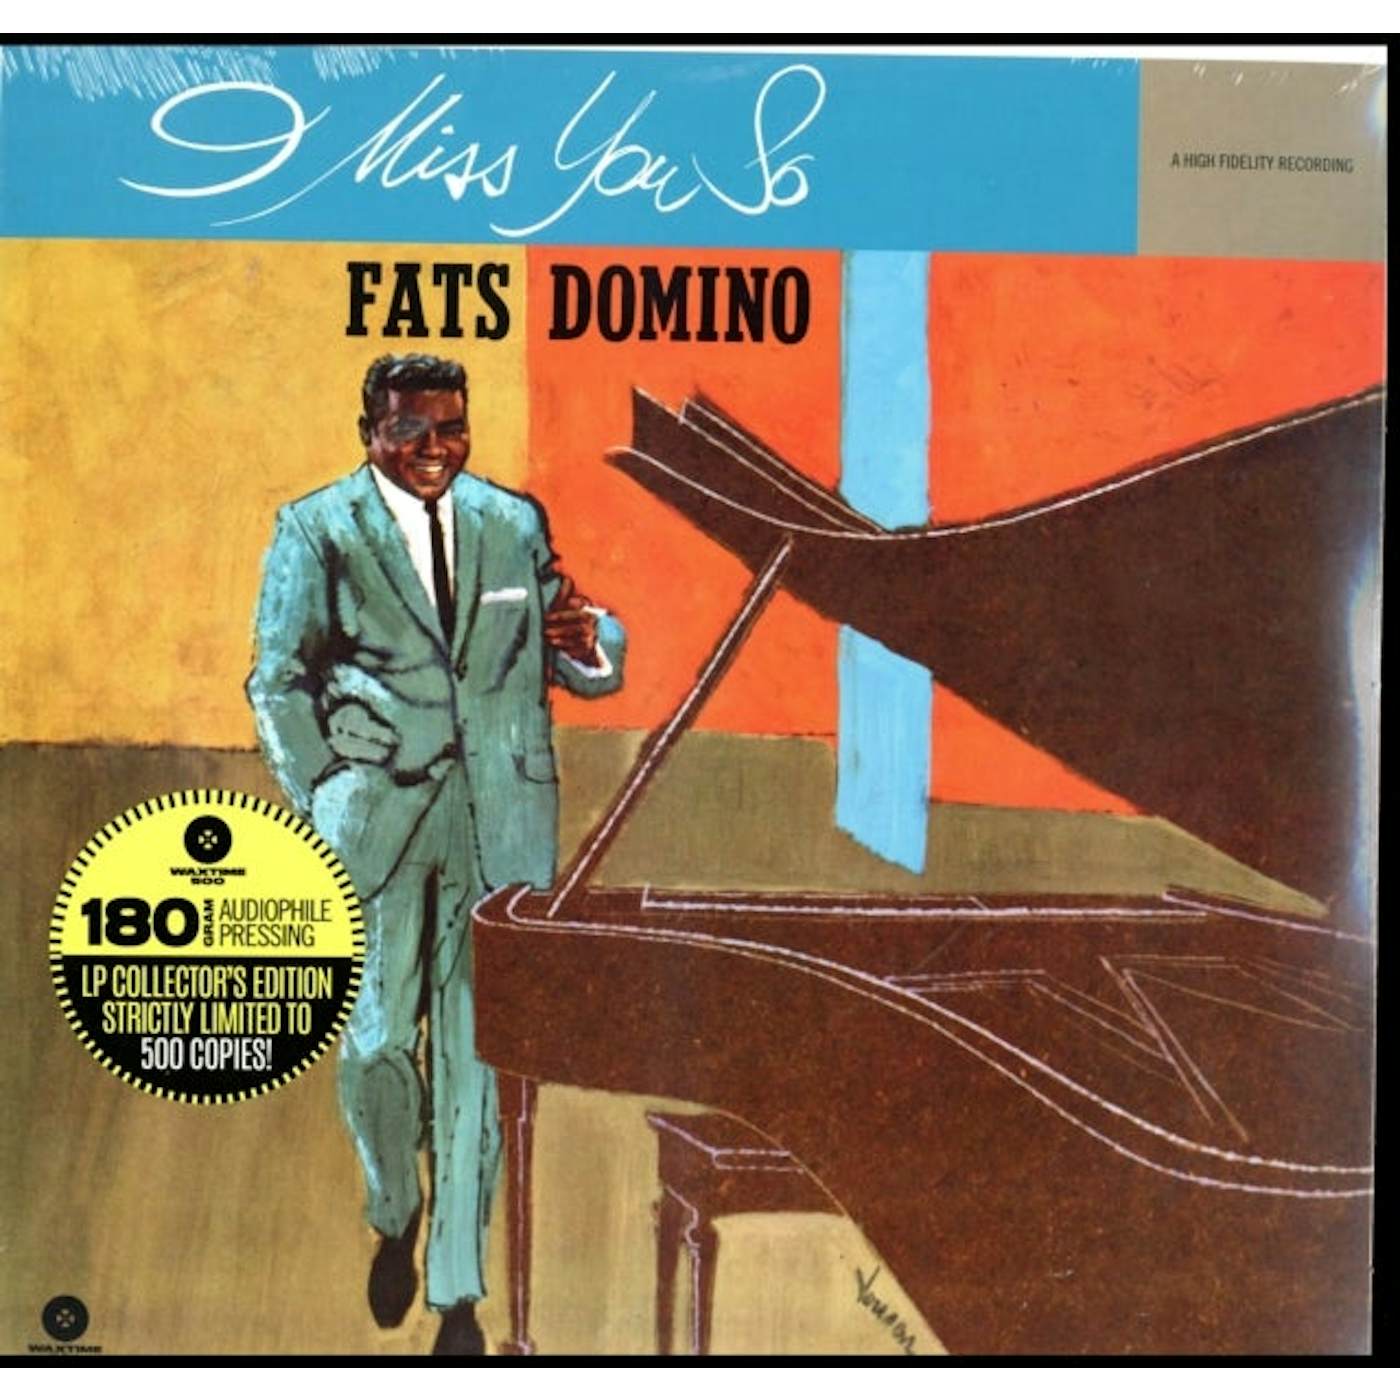 Fats Domino LP Vinyl Record - I Miss You So